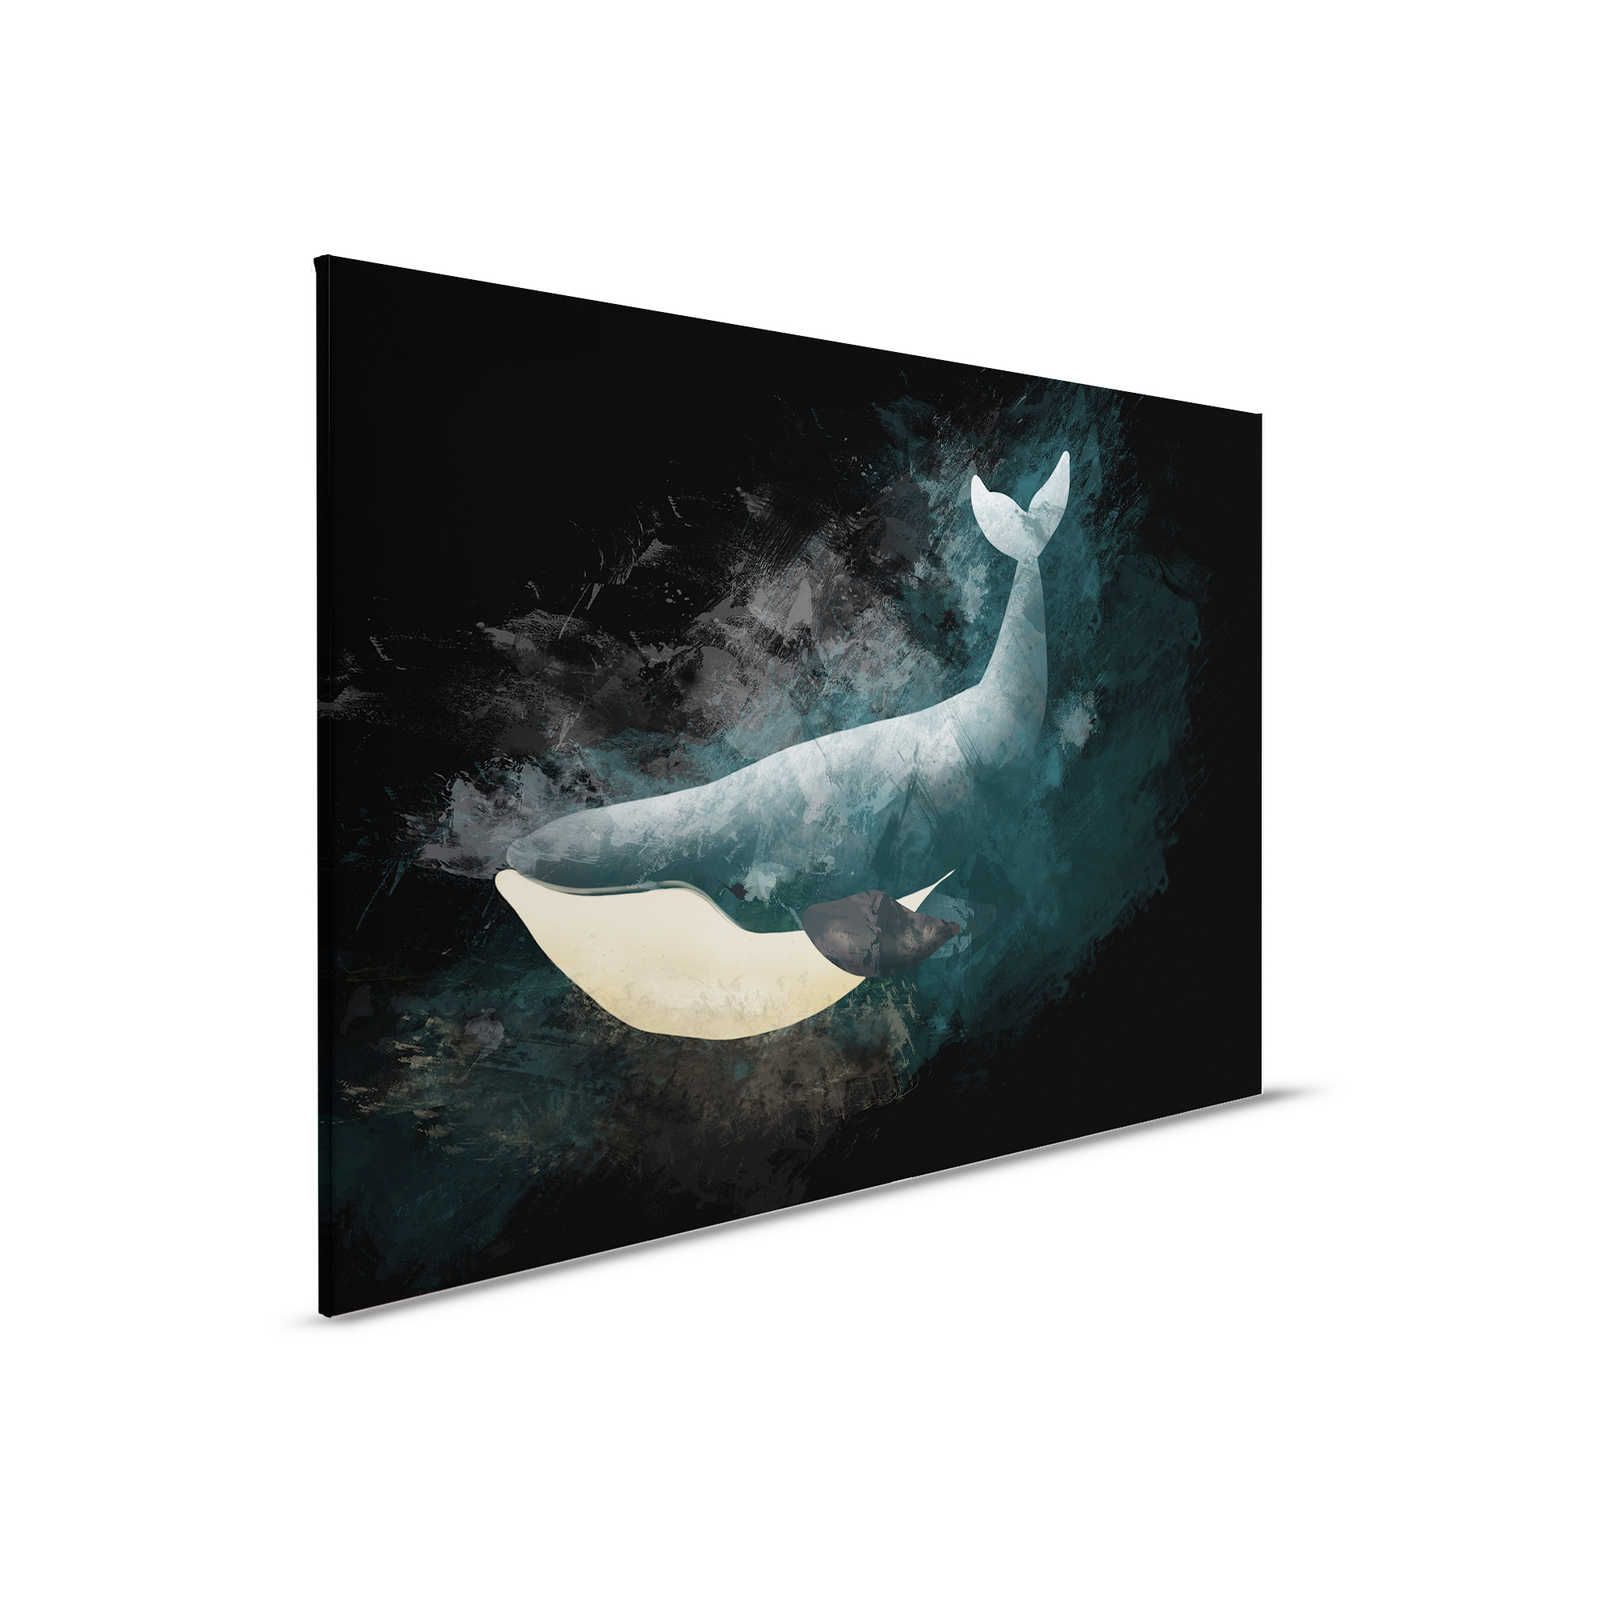 Zwart canvas schilderij met walvis in tekenontwerp - 0,90 m x 0,60 m
